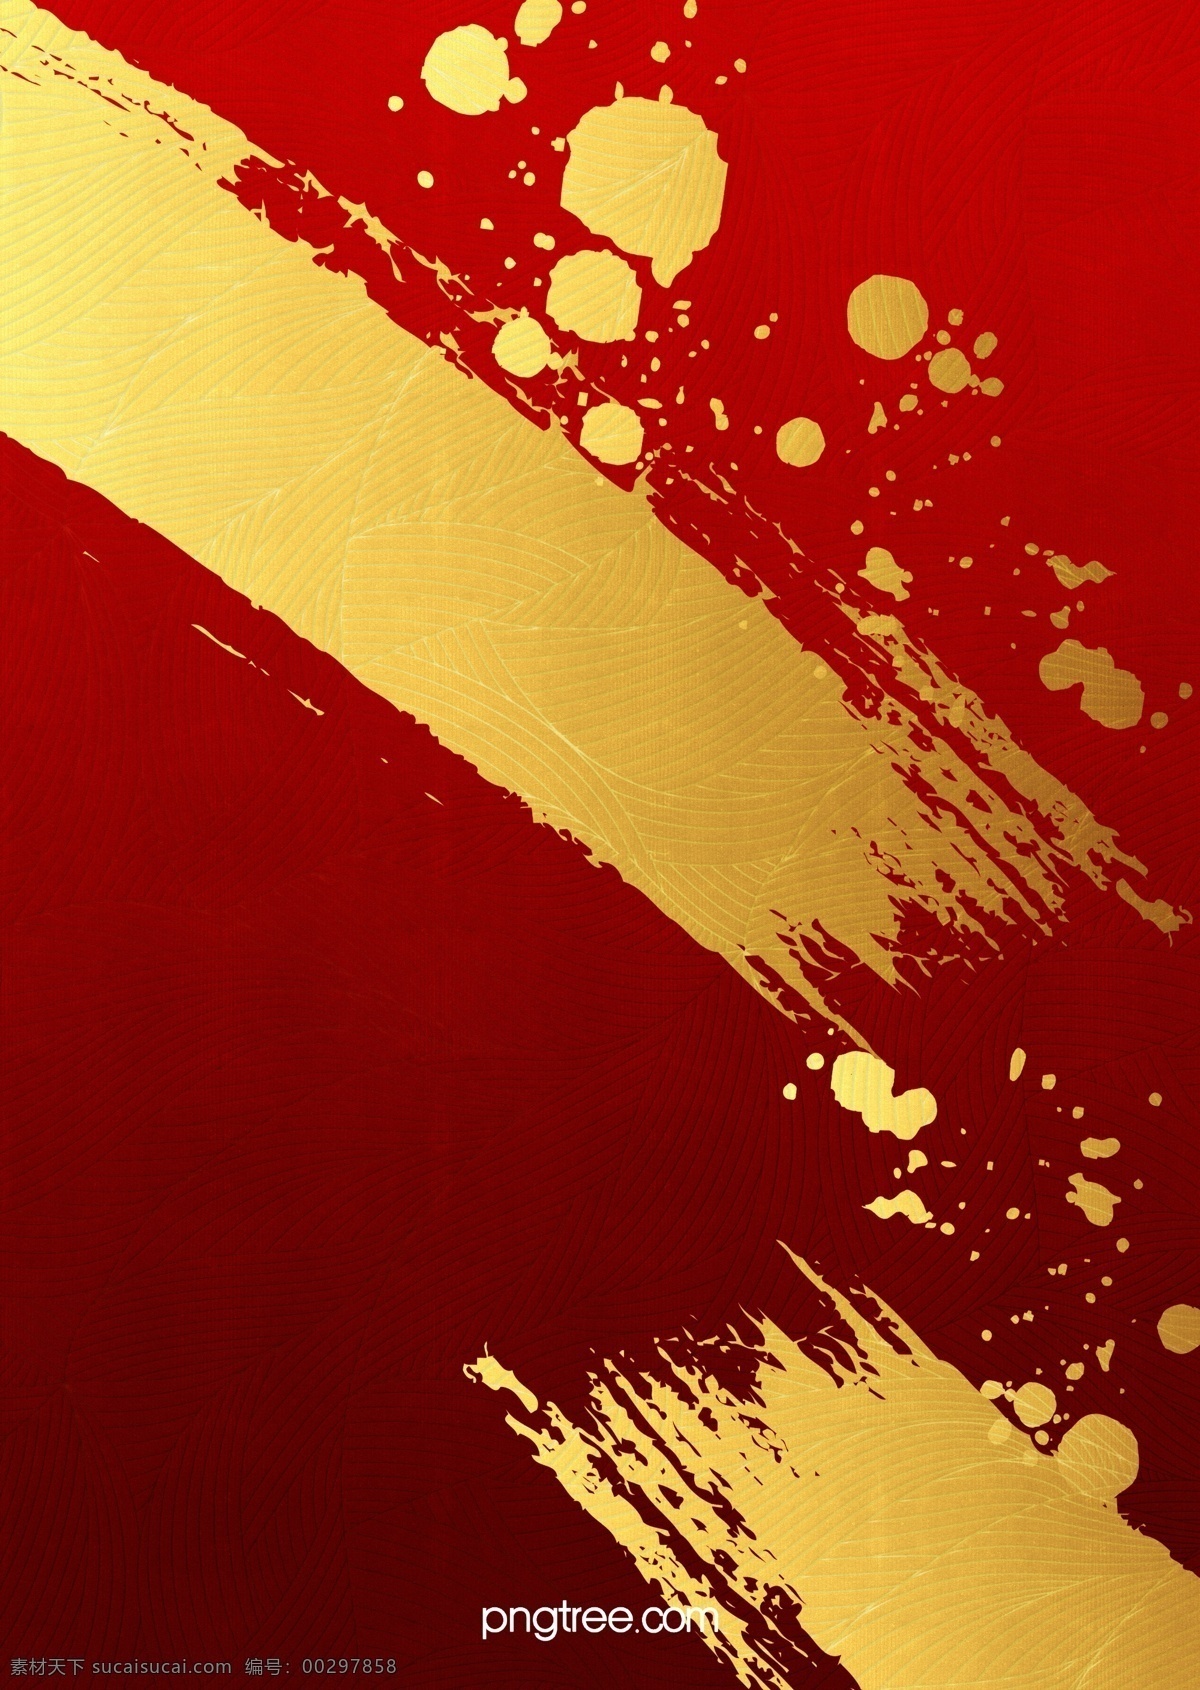 新年 纹理 红色 背景图片 底纹 红金 金色 新年背景 喜庆背景 背景素材 水墨素材 墨点 笔刷 分层